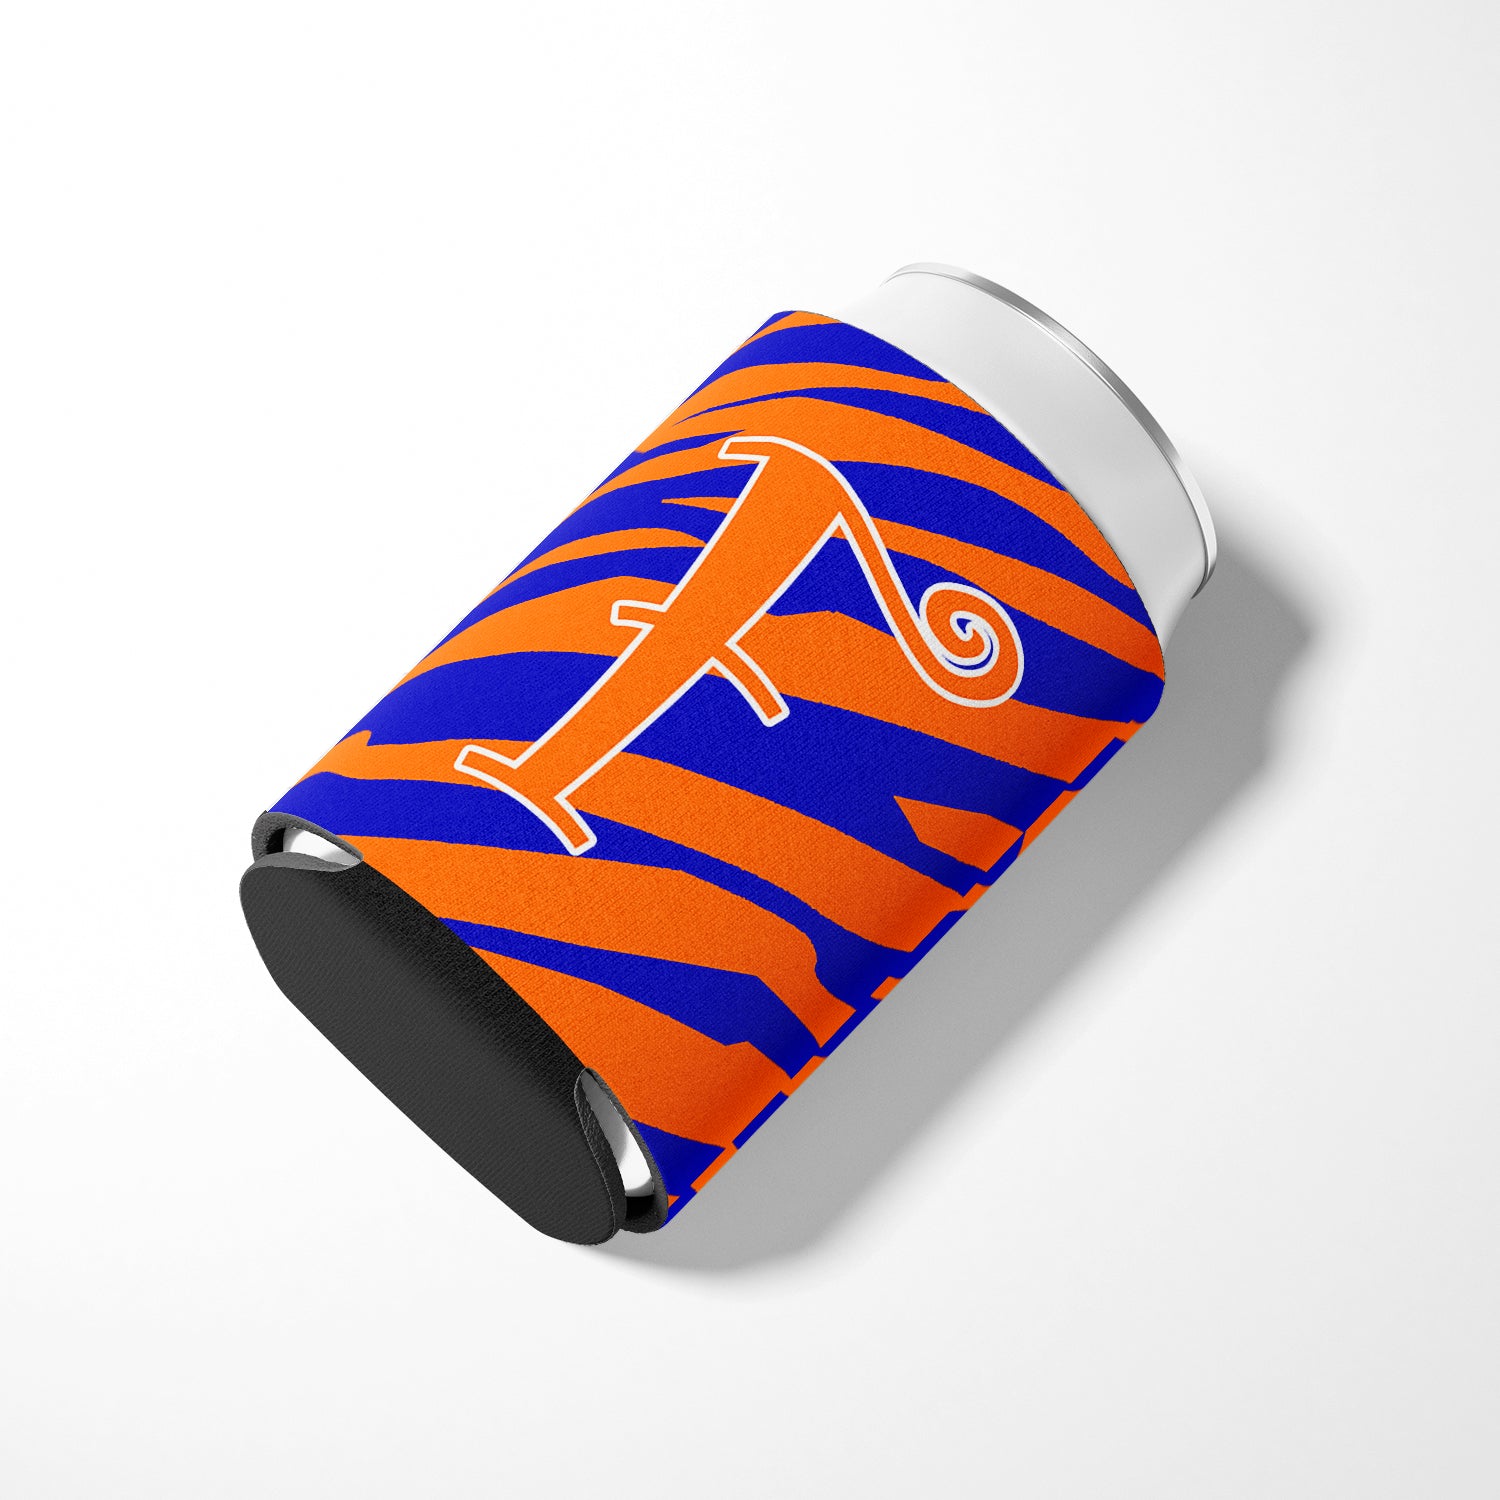 Letter F Initial Monogram - Tiger Stripe Blue and Orange Can Beverage Insulator Hugger.